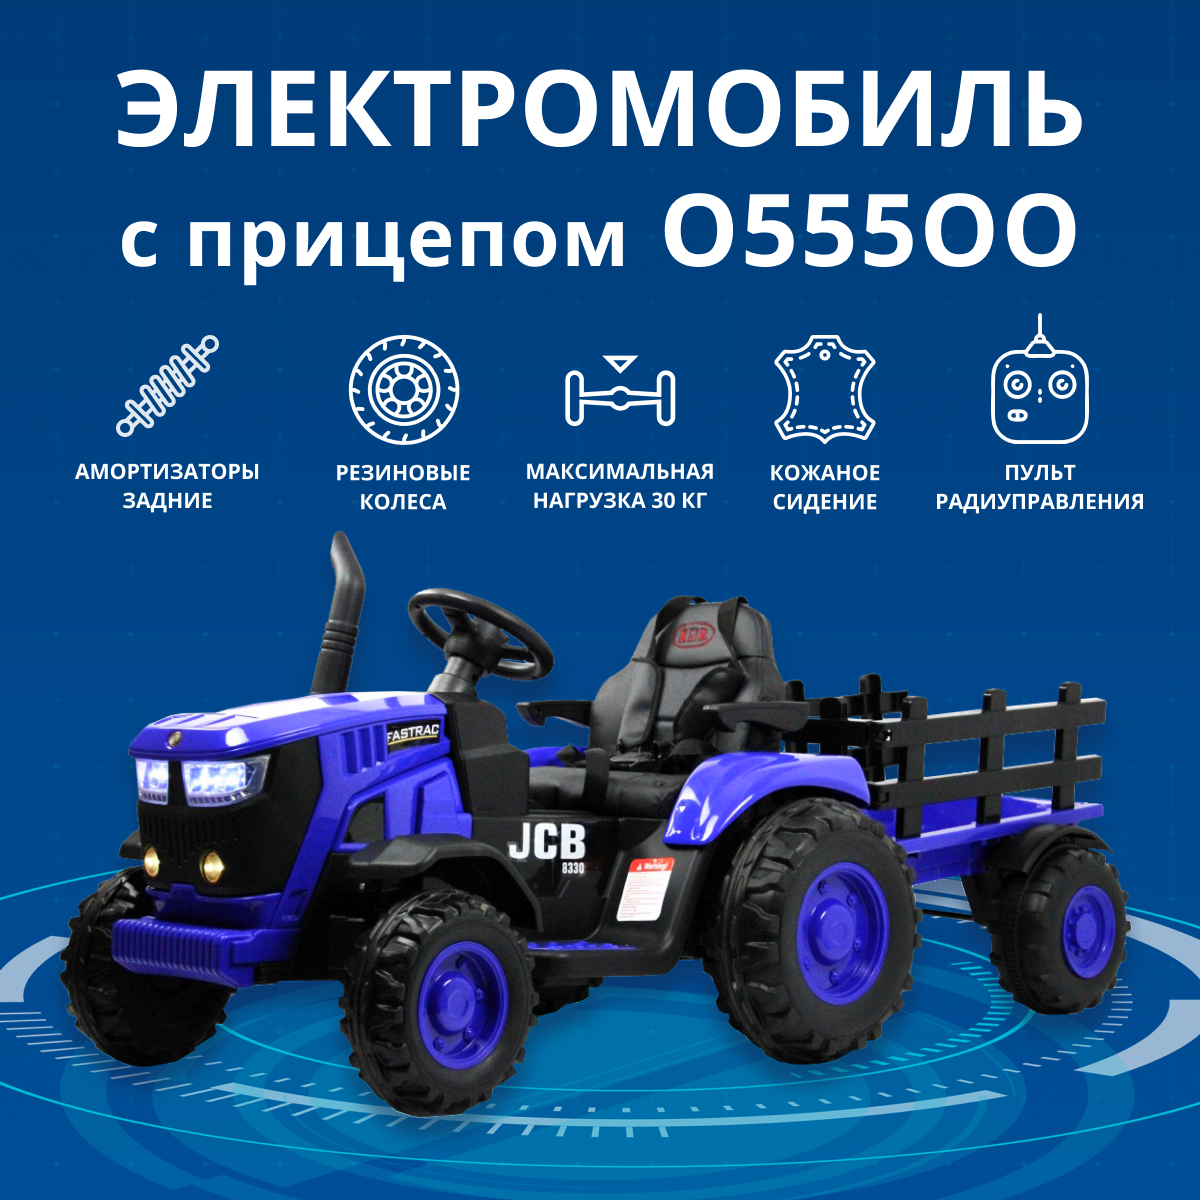 Электромобиль RIVERTOYS O555OO трактор с прицепом и дистанционным управлением, синий электромобиль трактор с прицепом novakids jcb синий пульт